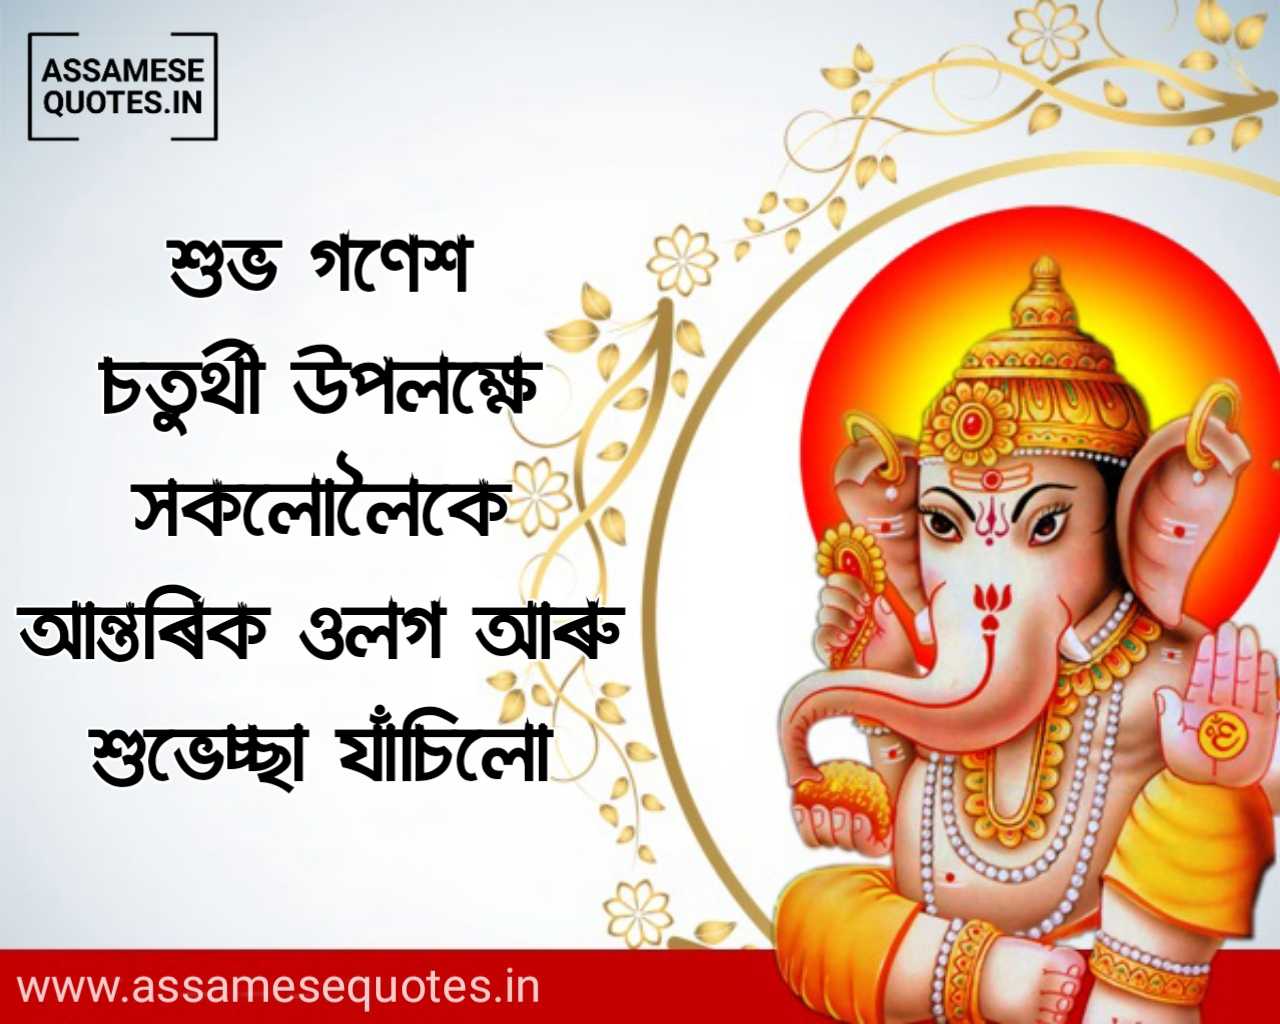 Happy Ganesh Chaturthi Assamese Images